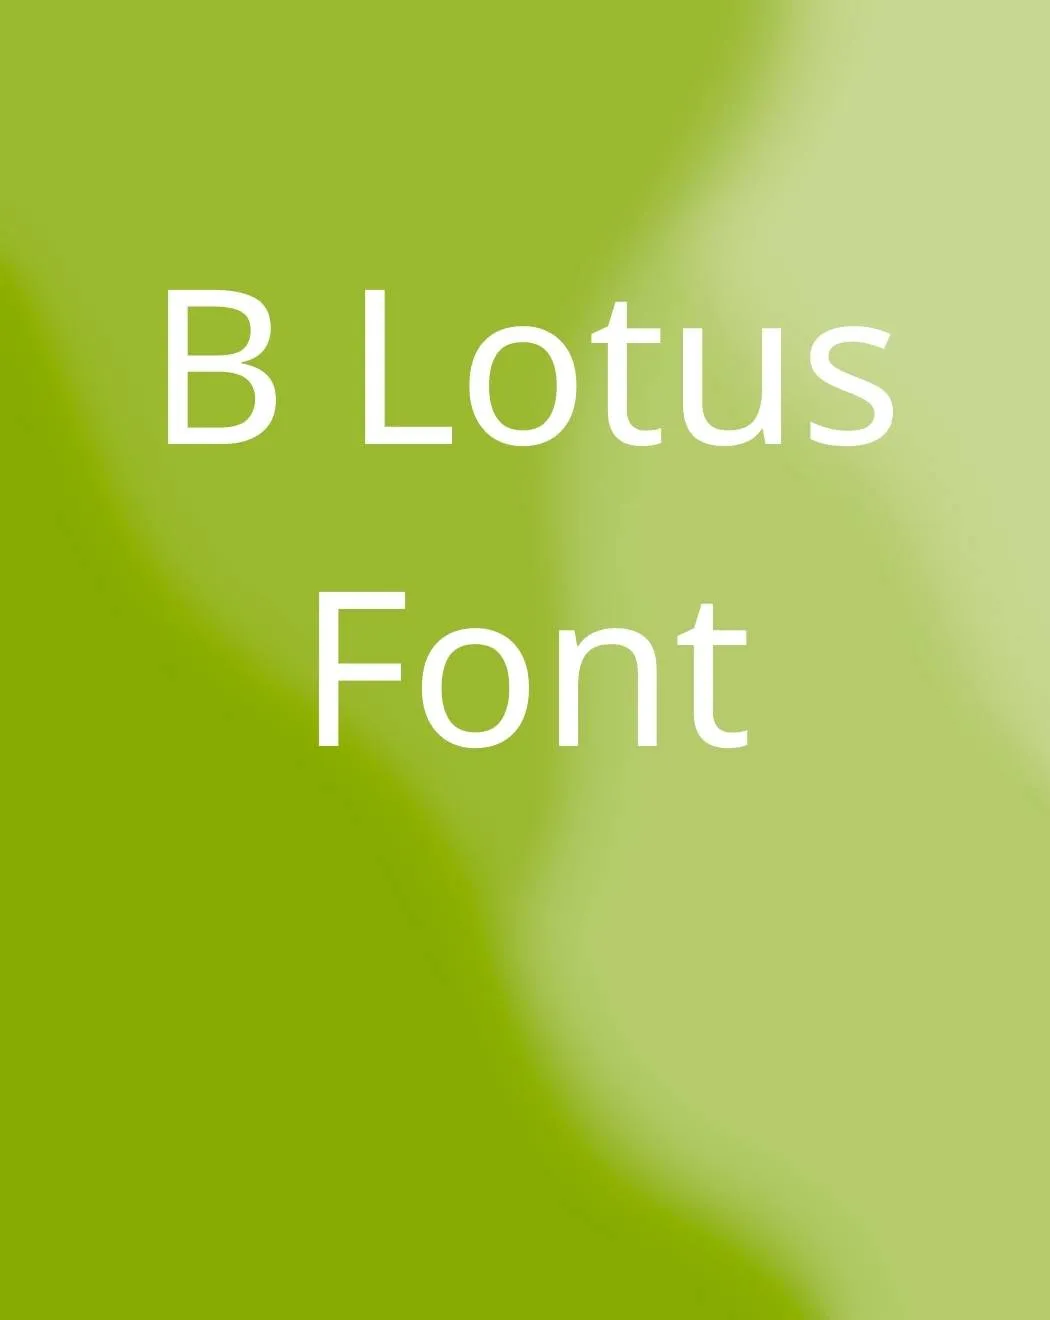 B Lotus Font Free Download